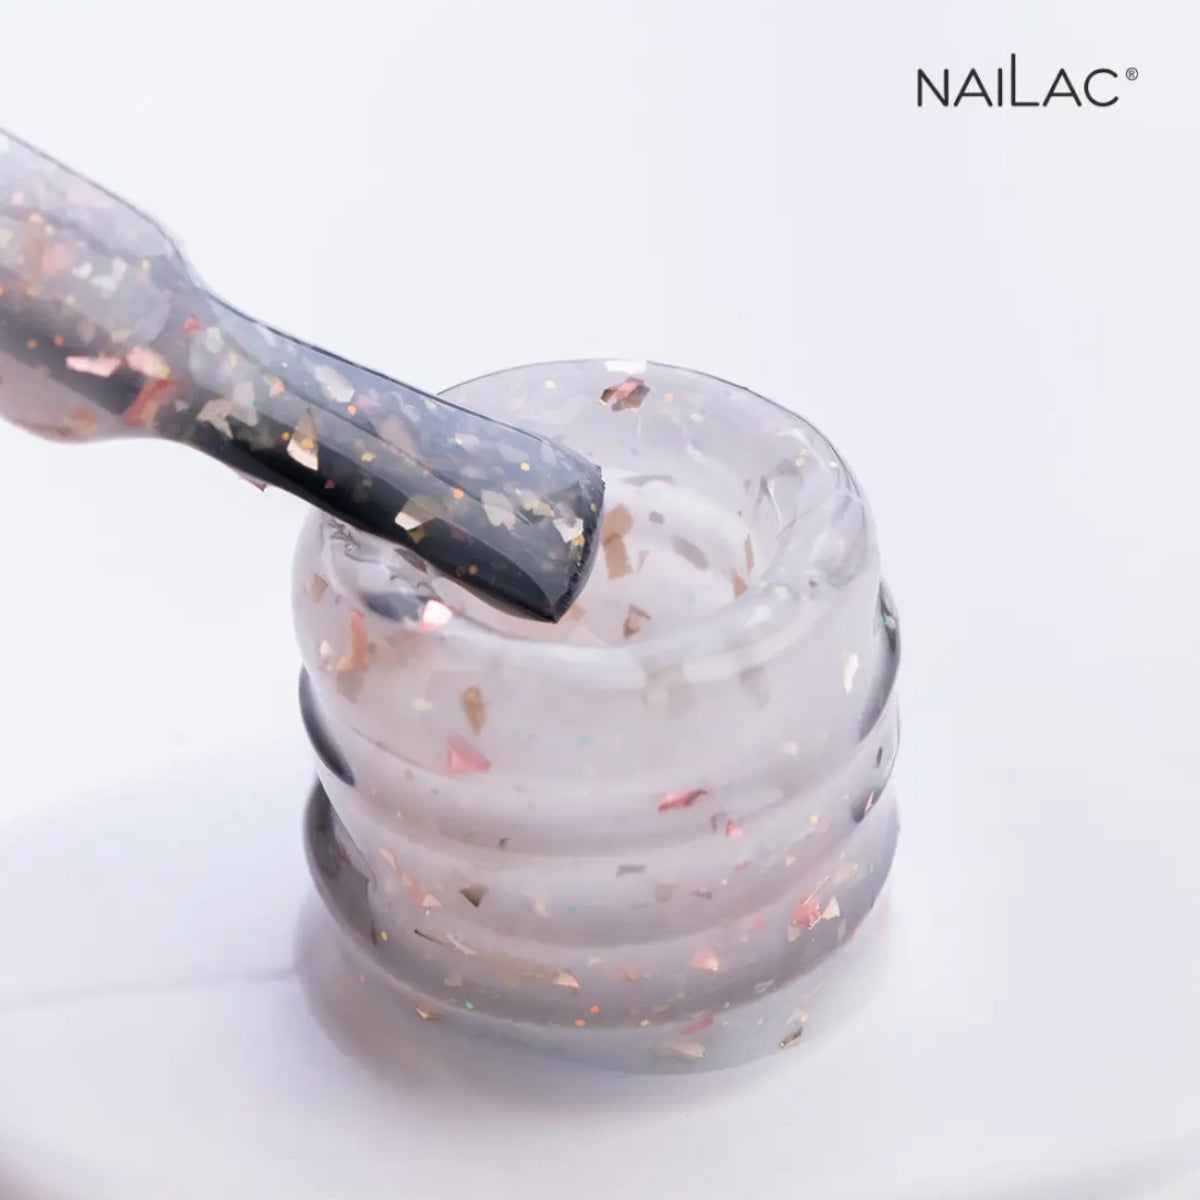 NaiLac Hybrid UV/LED Glammy Rubber Base Milk & Powder Swatch